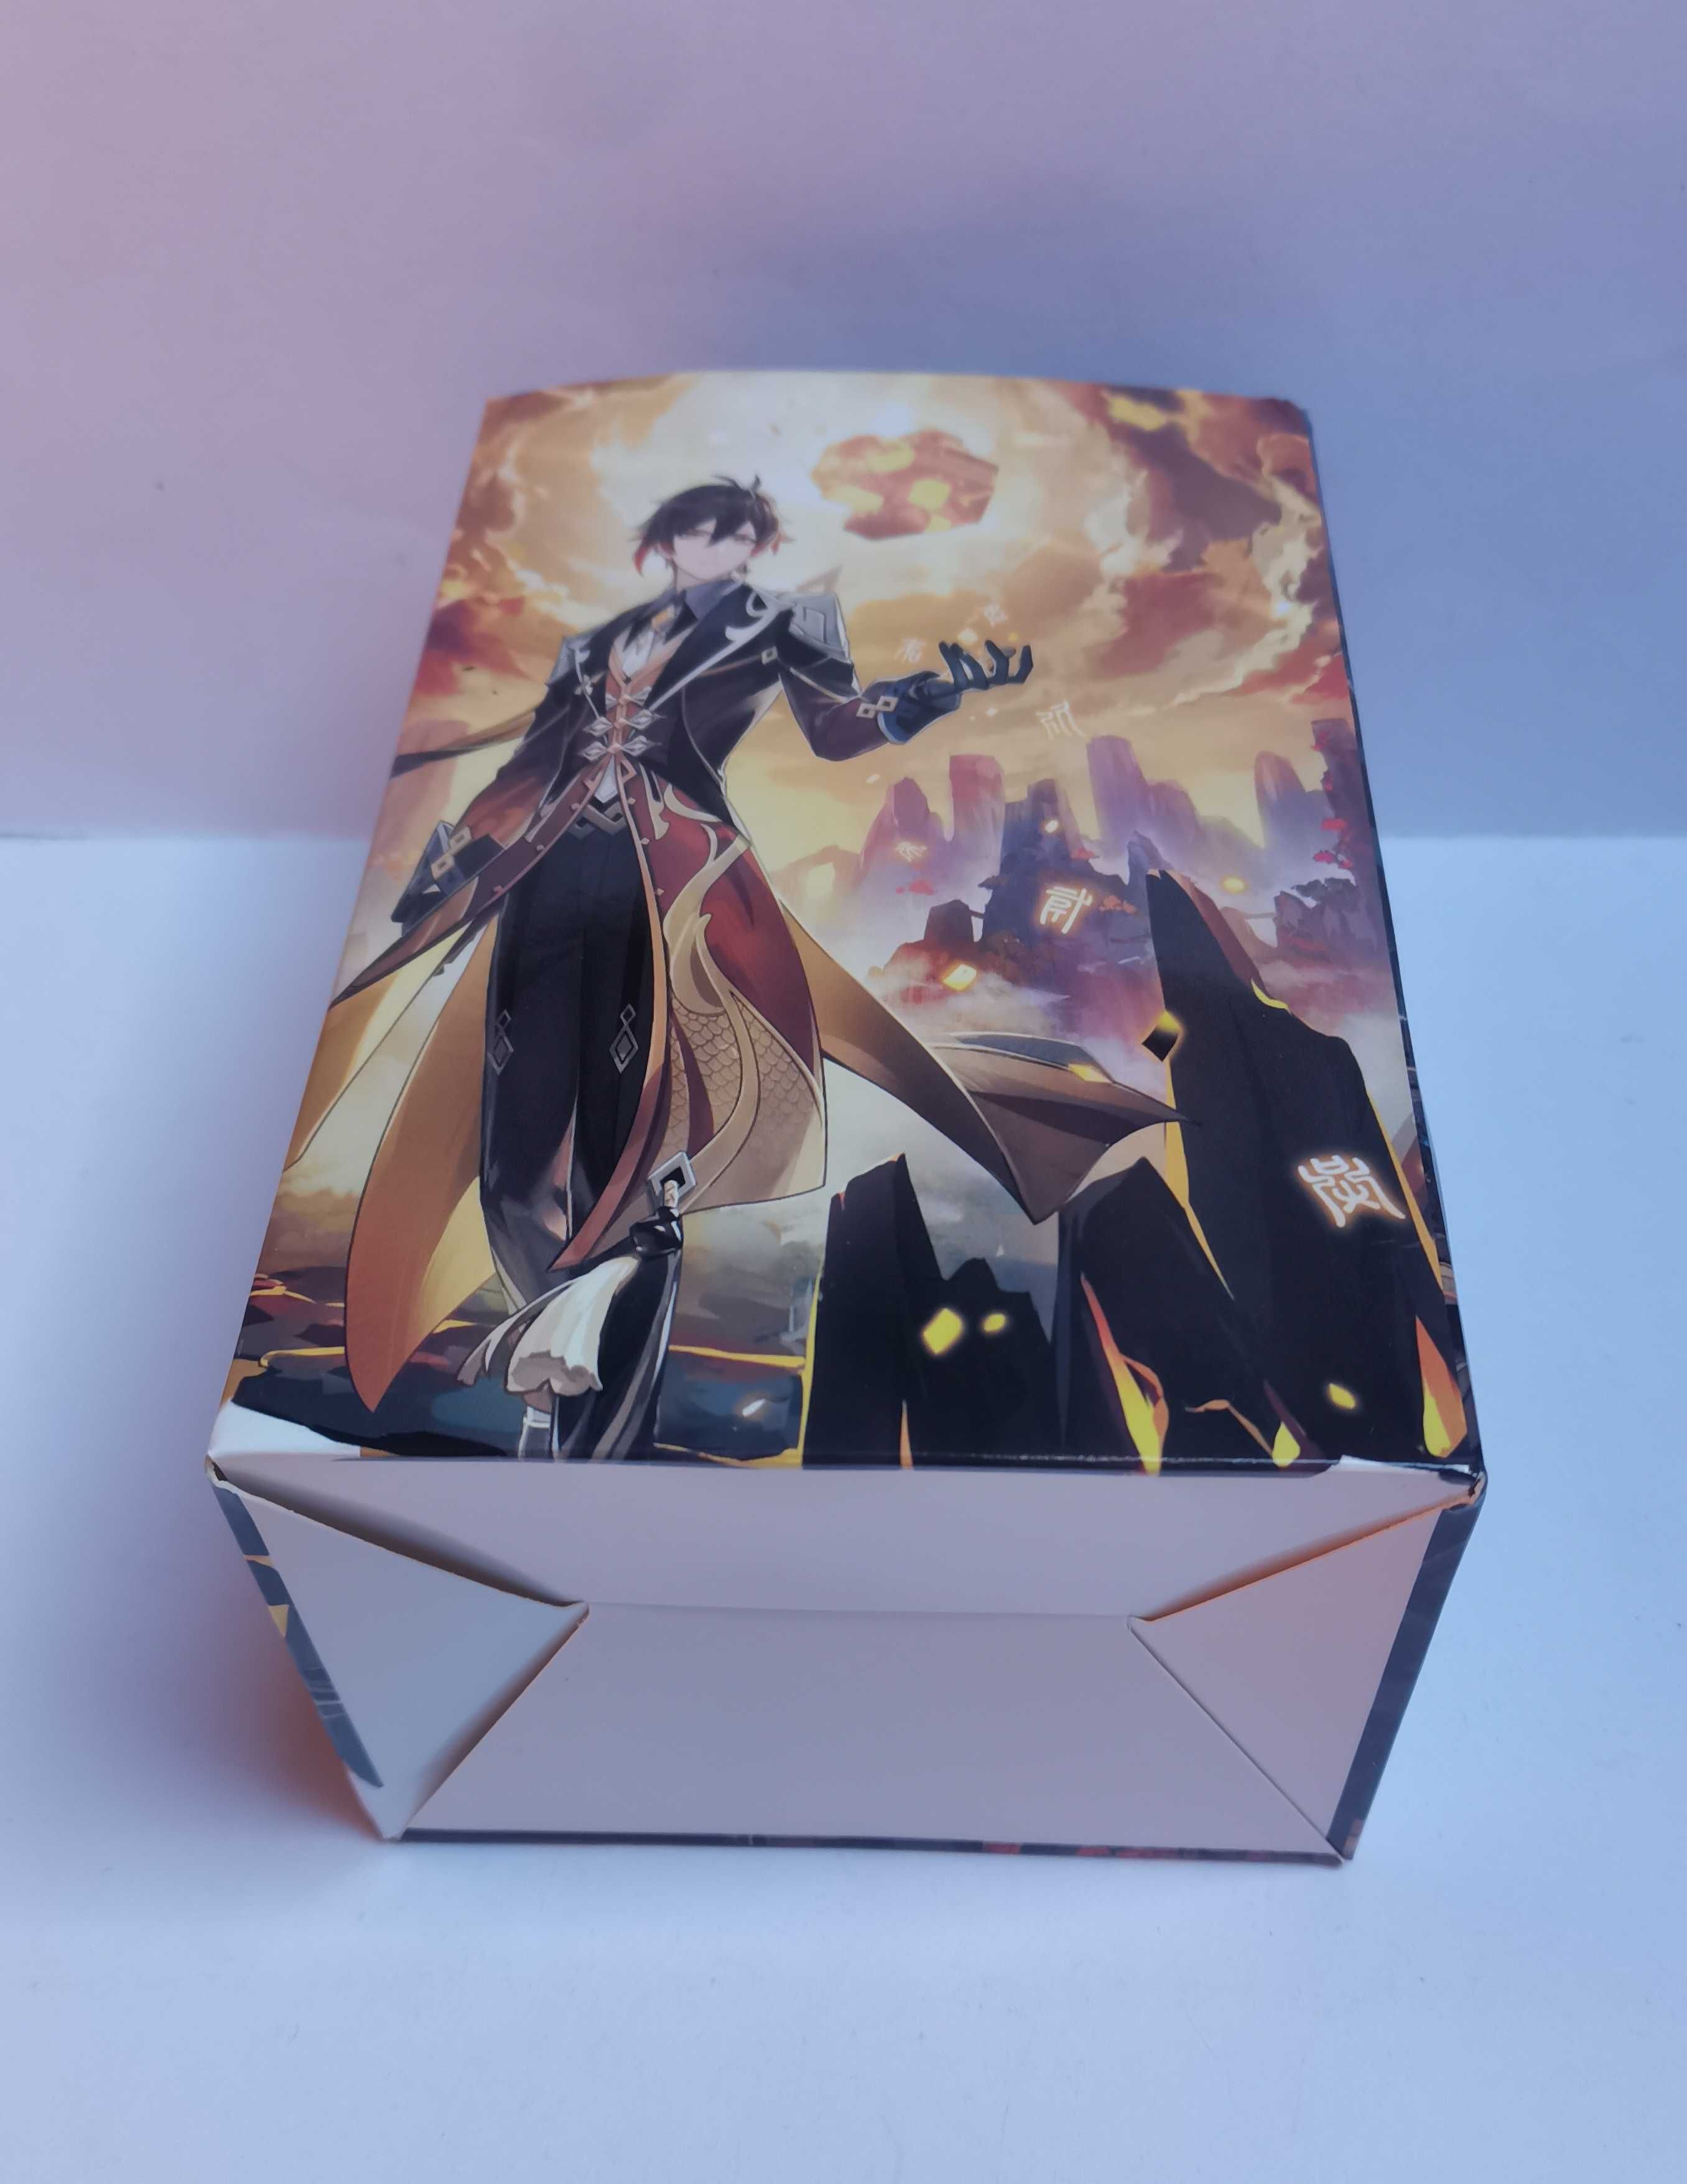 Zhongli (gra anime Genshin Impact) - duża figurka + pudełko